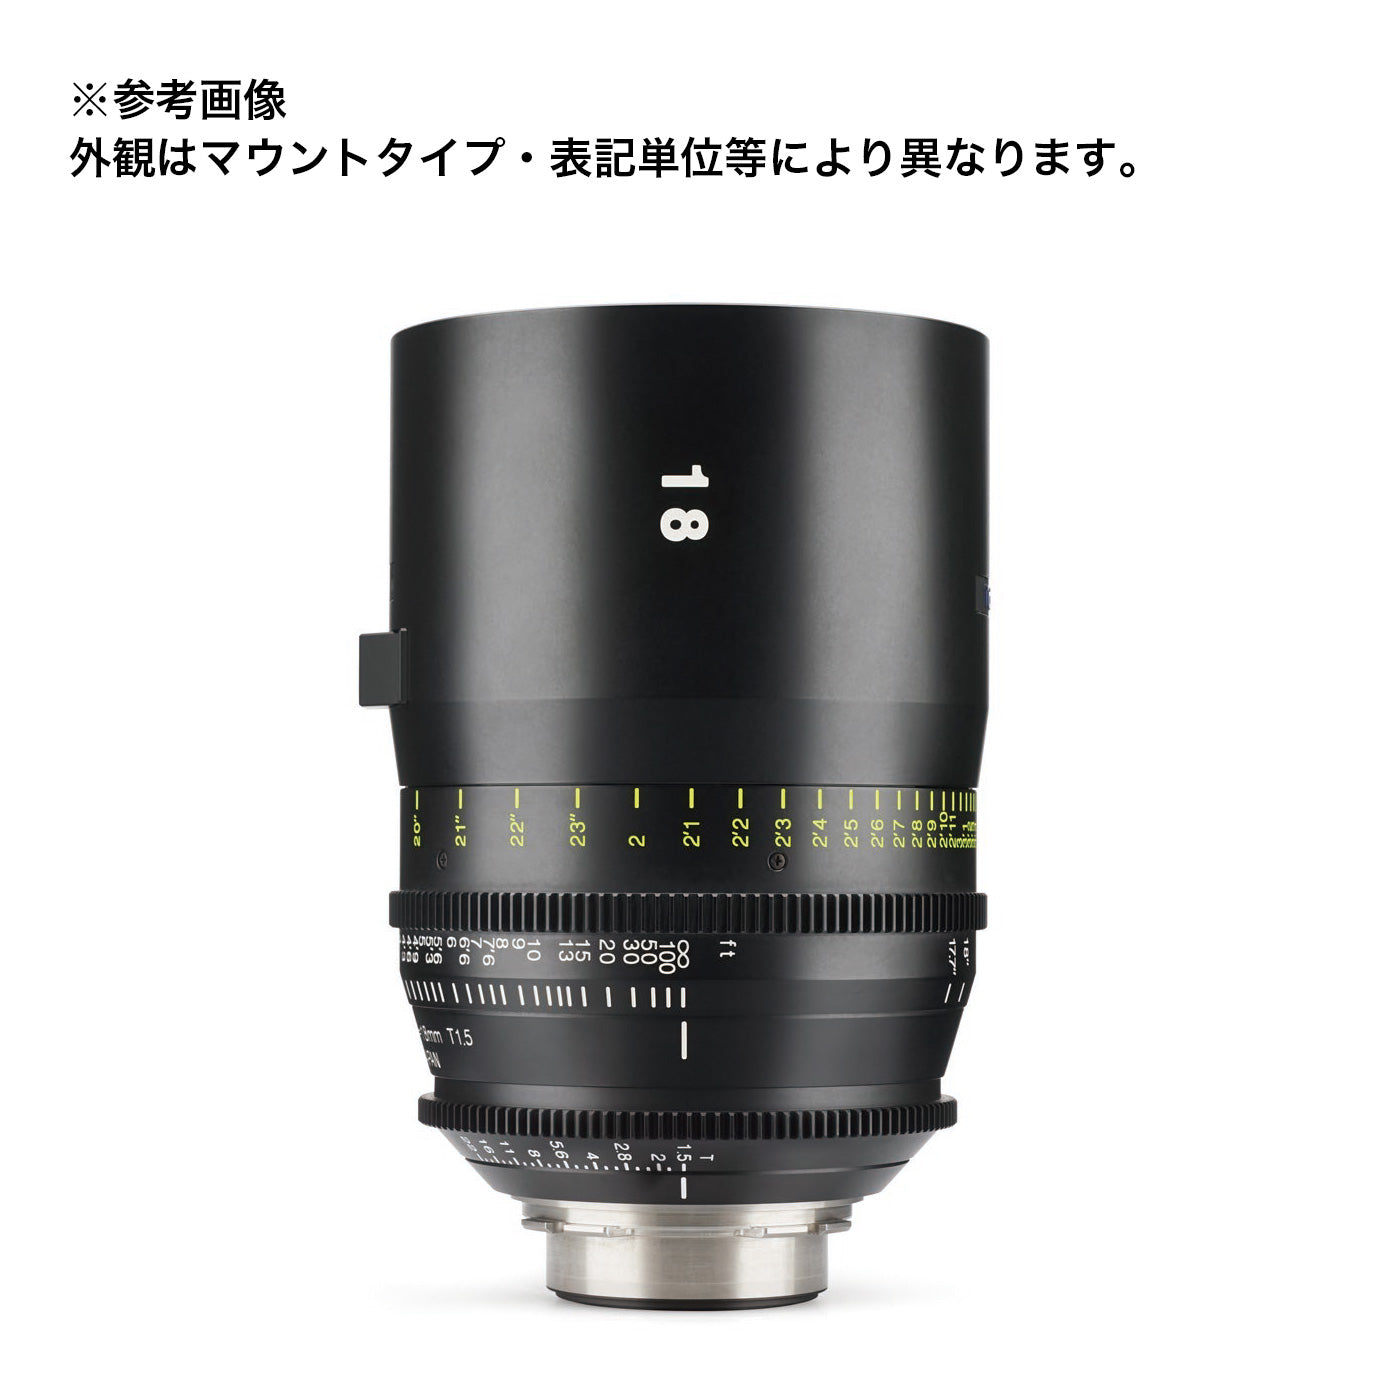 Tokina(トキナー) シネマプライムレンズ VISTA 18mm T1.5 CINEMA LENS マイクロフォーサーズマウント メートル表記 [264147]